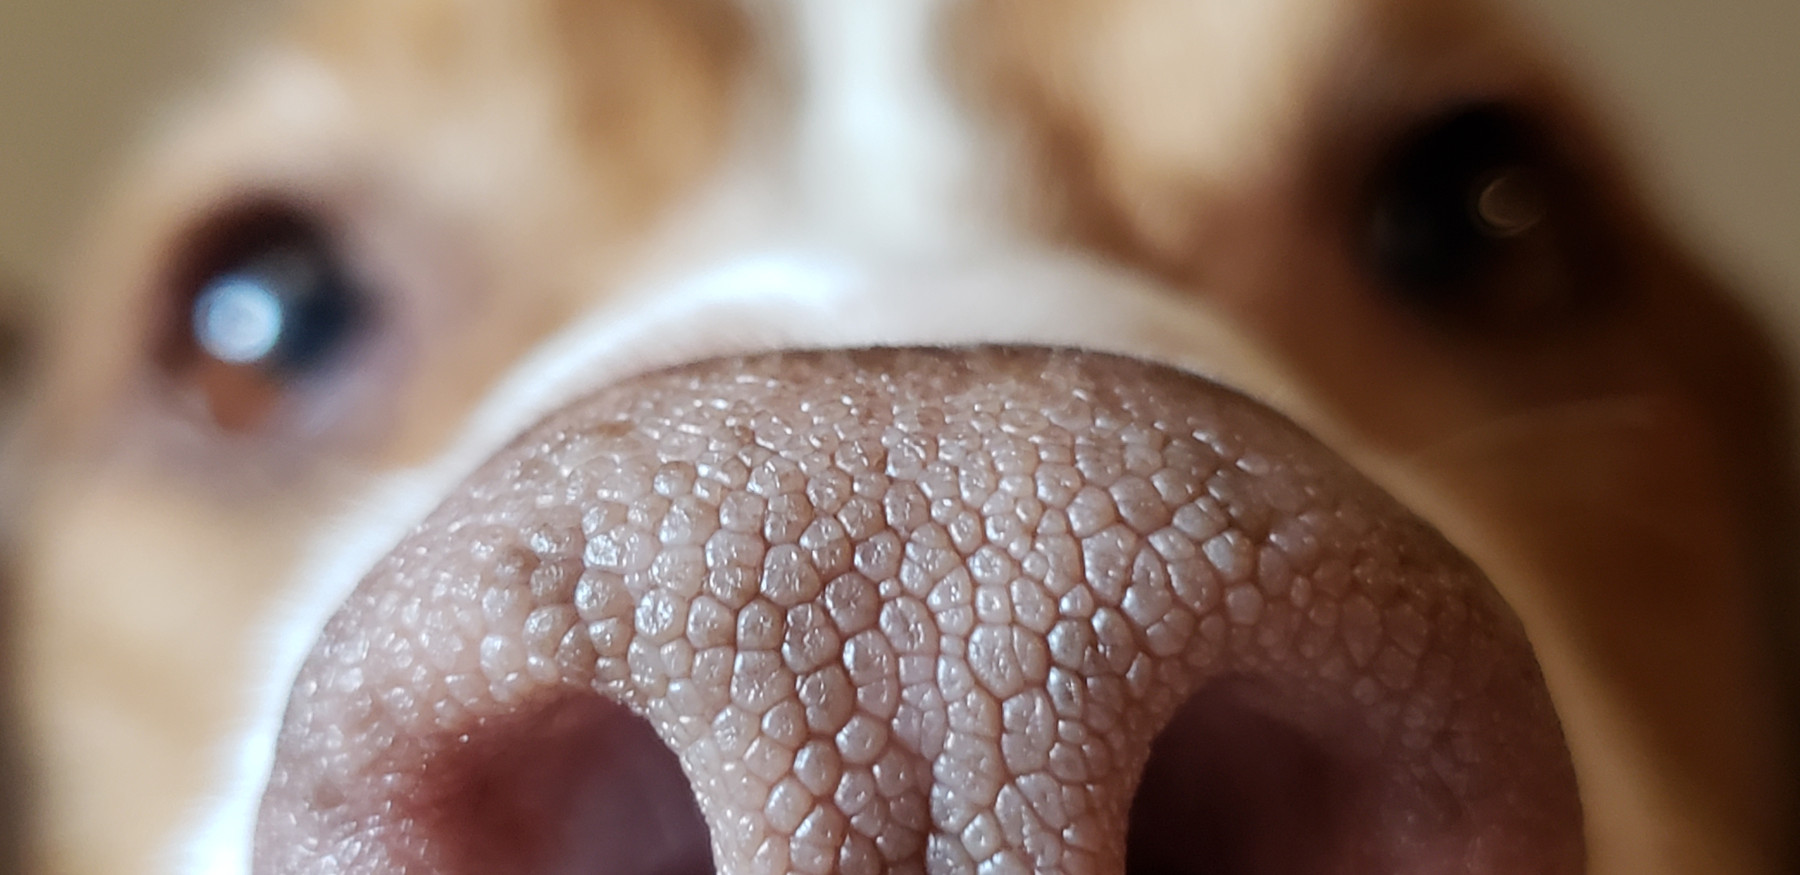 Hundenasen besitzen ein 15-mal grösseres Riechfals als der Mensch.